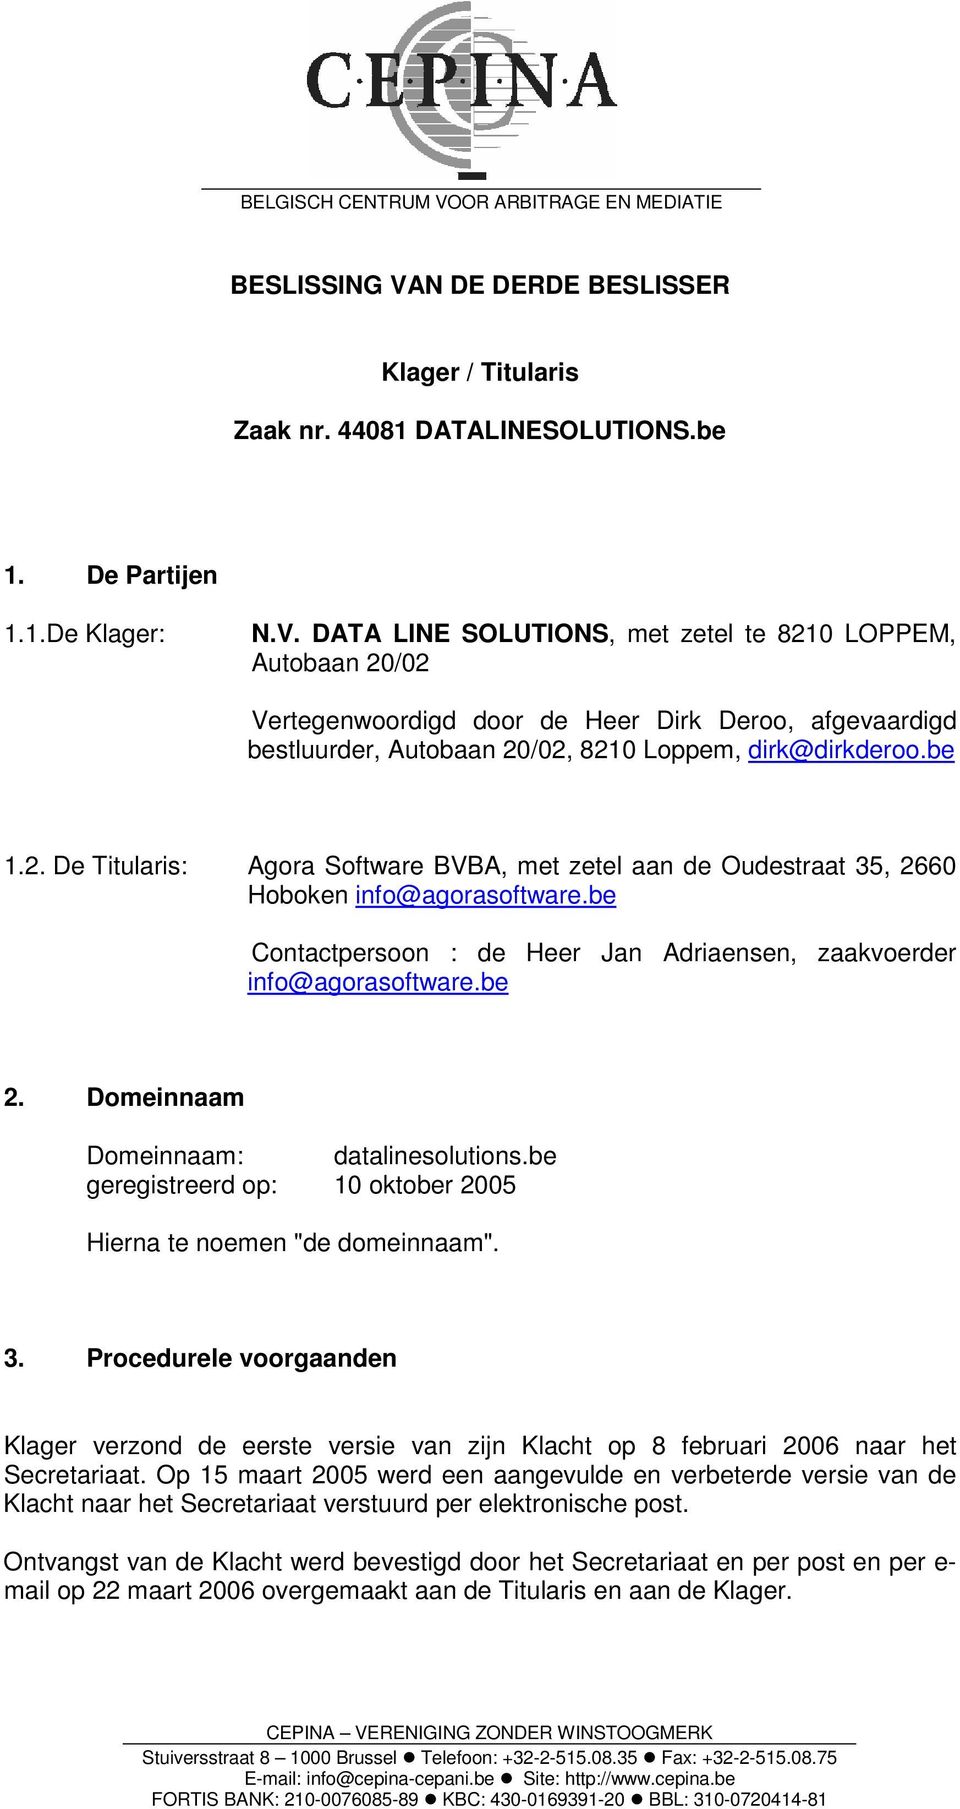 Domeinnaam Domeinnaam: datalinesolutions.be geregistreerd op: 10 oktober 2005 Hierna te noemen "de domeinnaam". 3.